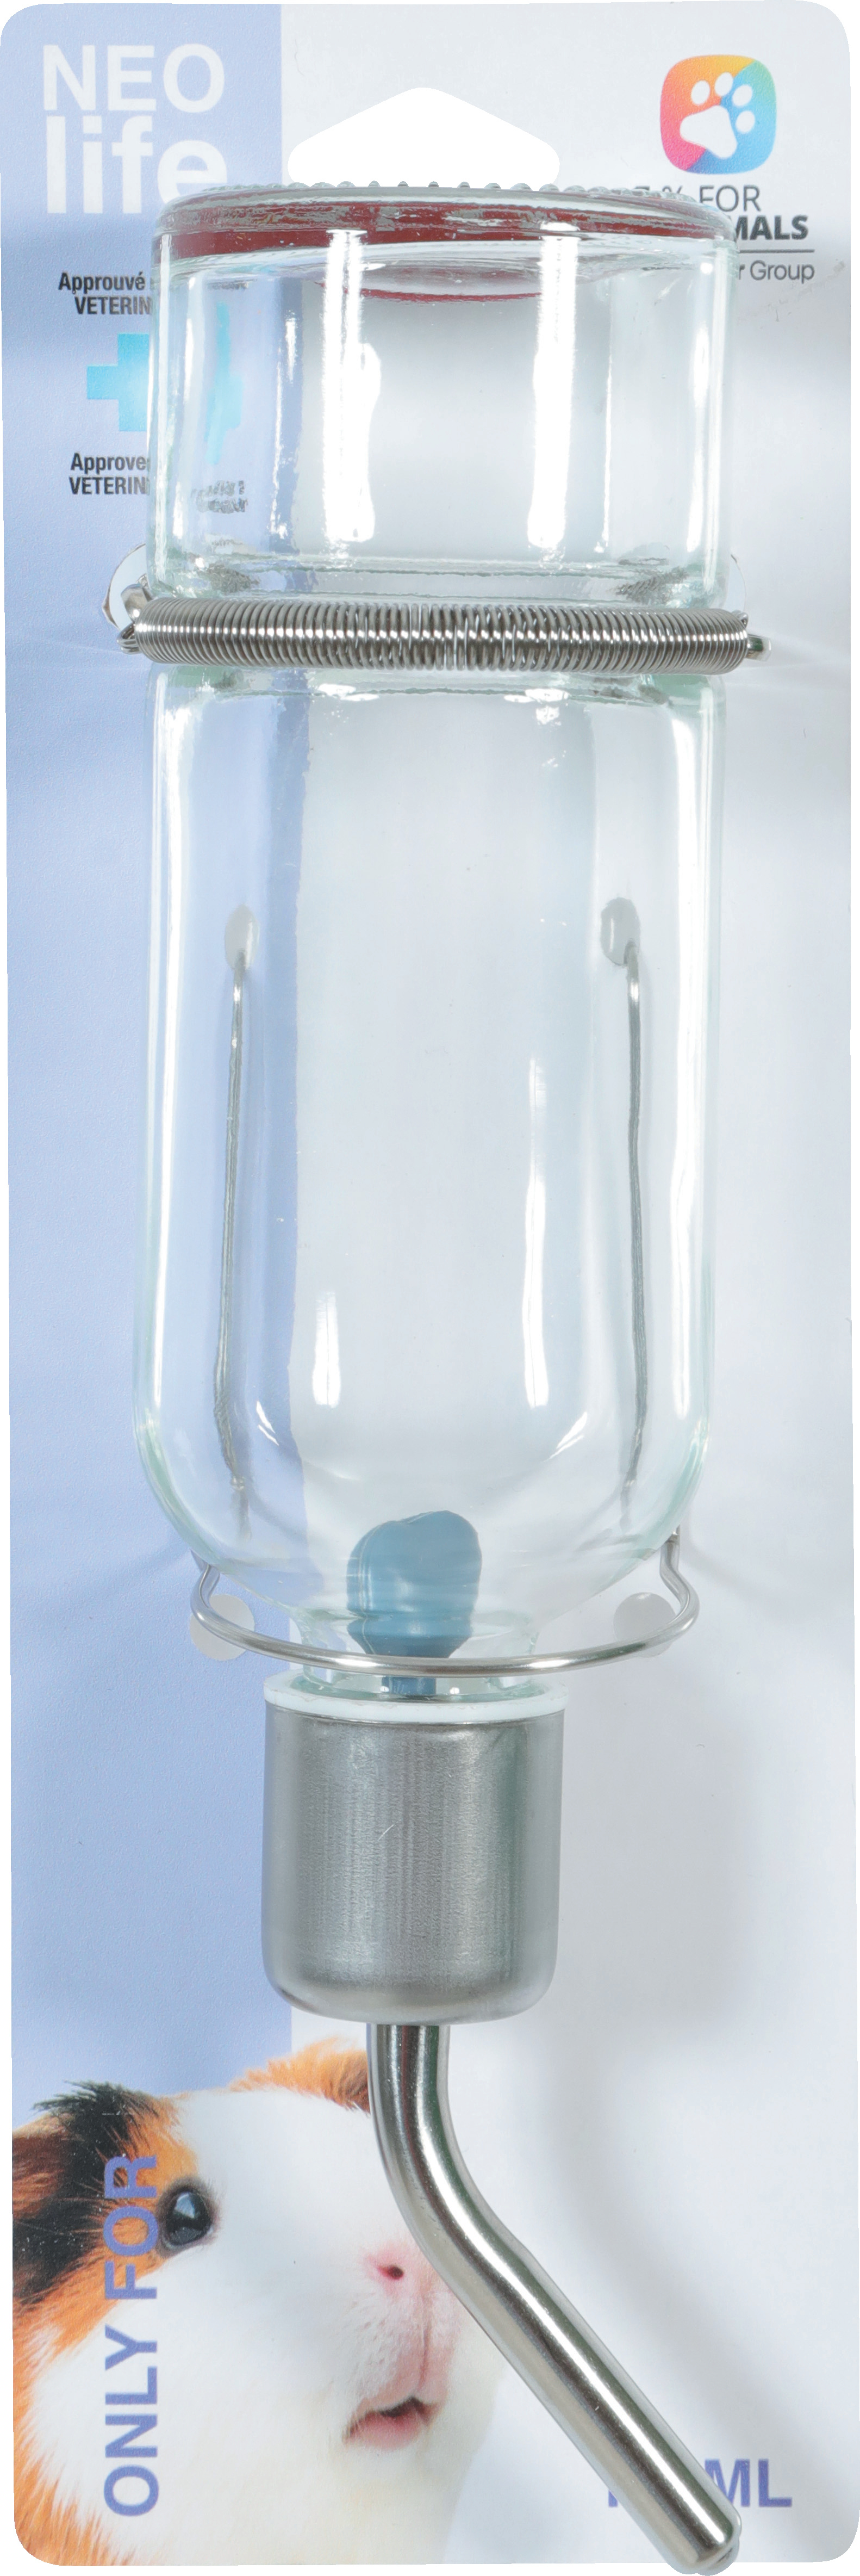 Zolux NEOLIFE Glasflasche für Kleintiere - 2 Größen erhältlich